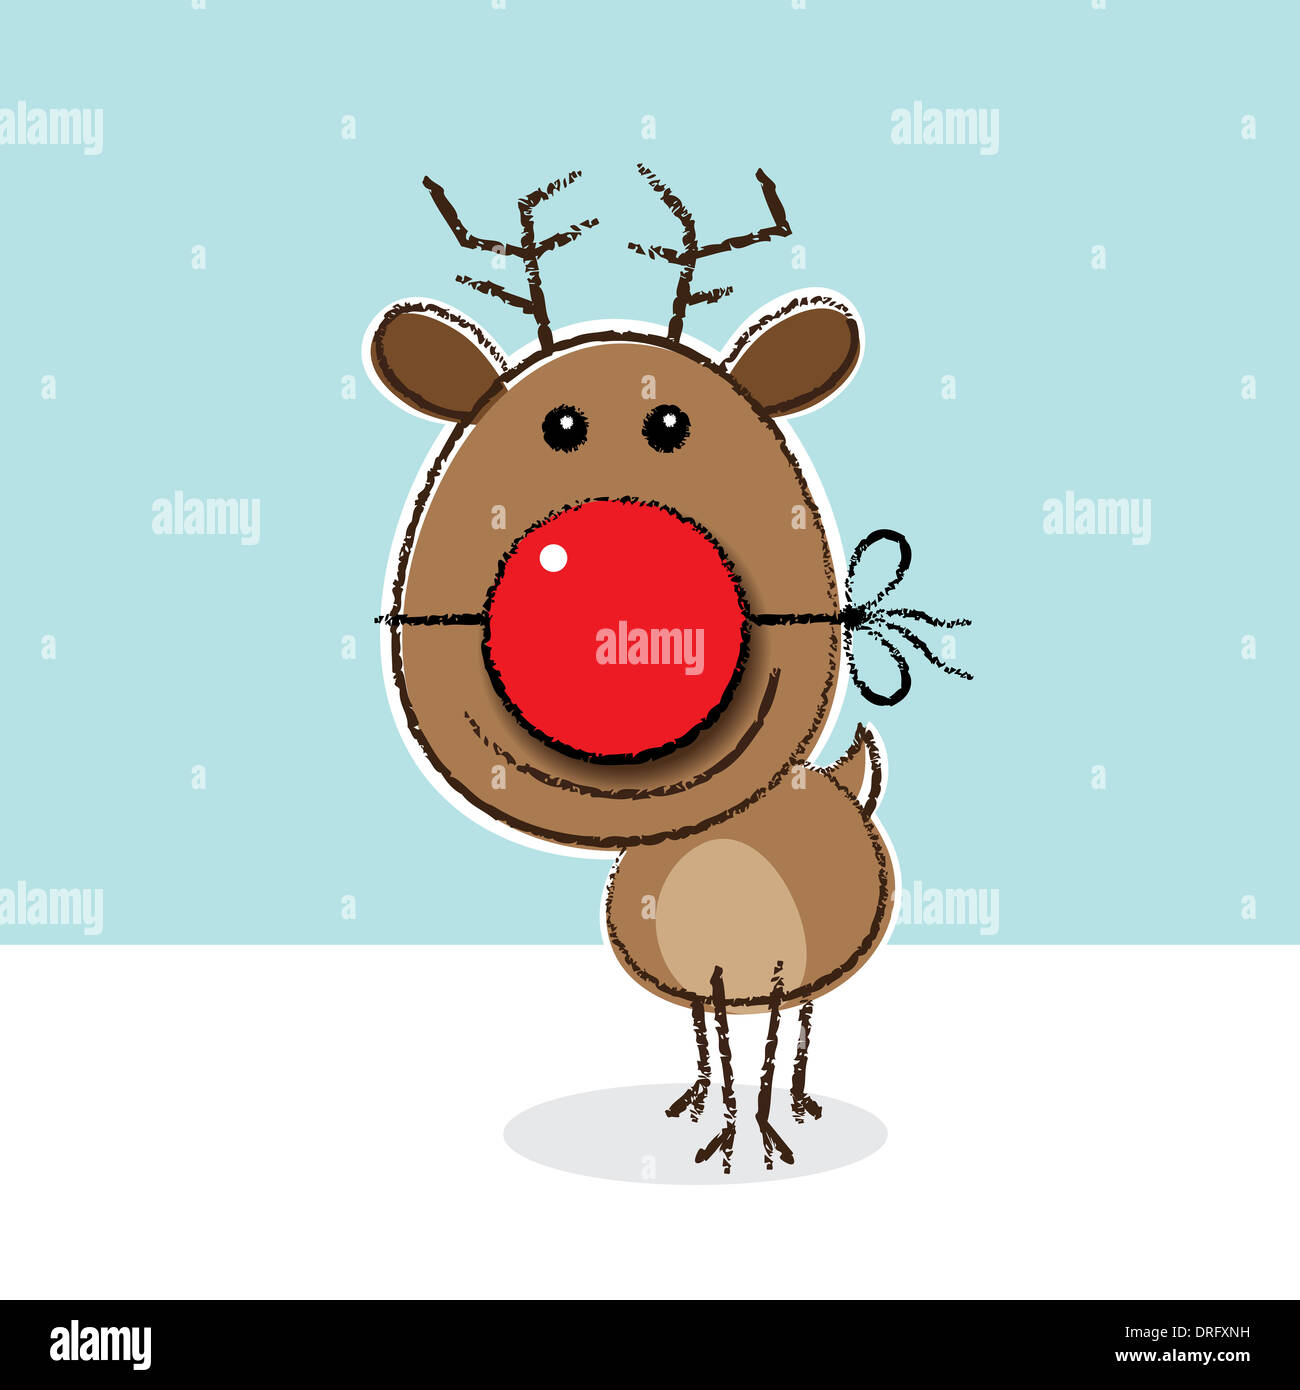 Rudolph, el reno de nariz roja vistiendo la nariz de payaso como